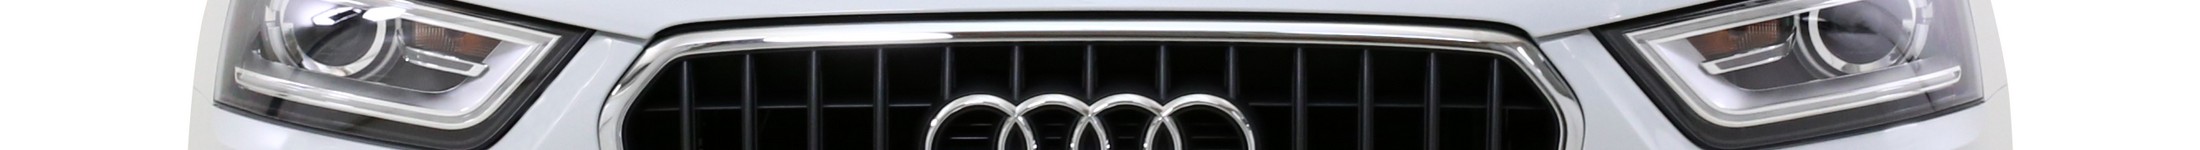 Audi baner główny marki. Fron samochodu klasy premium na abonament.